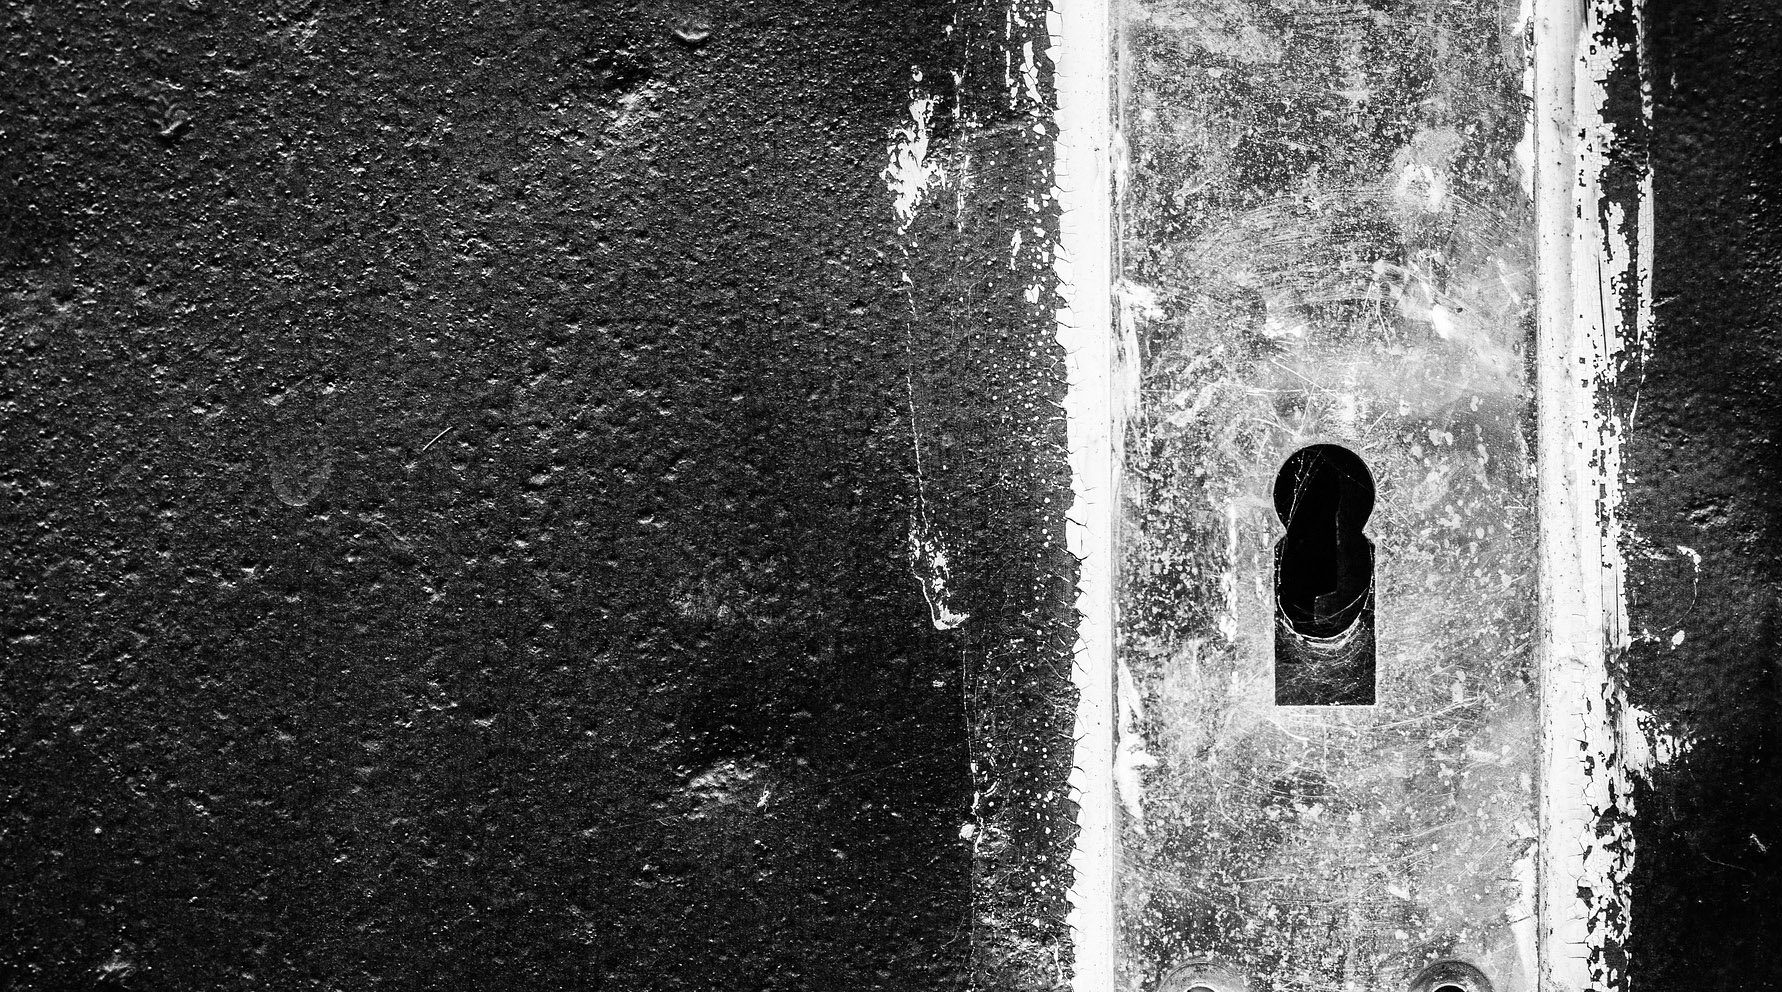 Five Years After Moving In, Homeowner Finds Secret Door To Strange Hidden Room